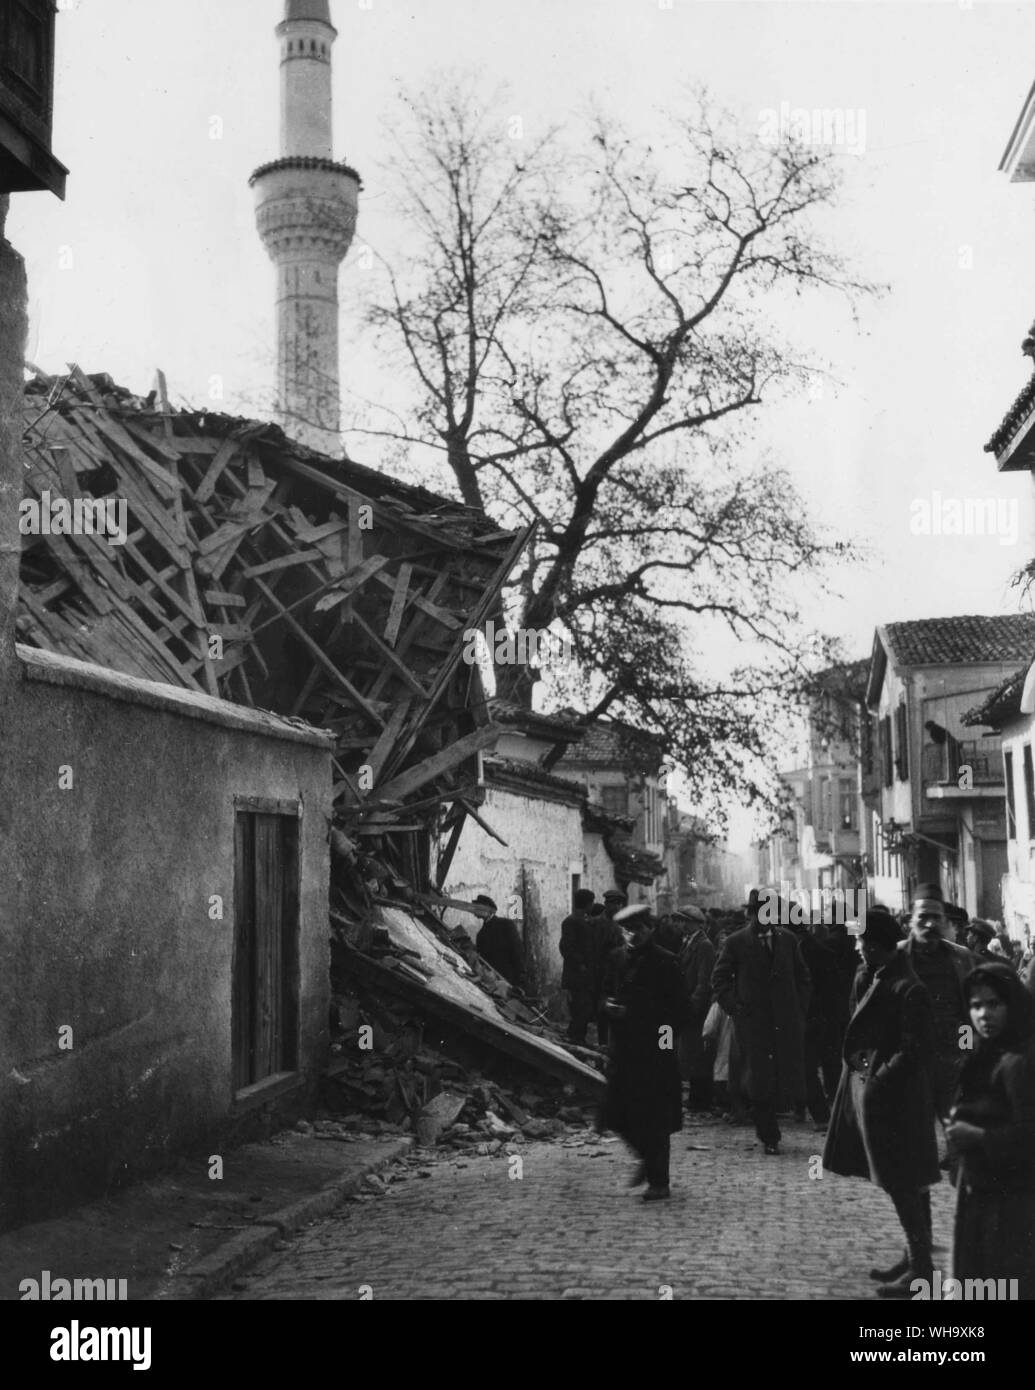 WW1: LZ.85 Tropfen Bomben auf Saloniki, 31 Jan. 1916. Dies zeigt das Haus einer griechischen Familie durch die Bombe eingeschlagen. Drei Menschen wurden getötet und drei im Haus verletzt. Bombe beschädigt werden. Stockfoto